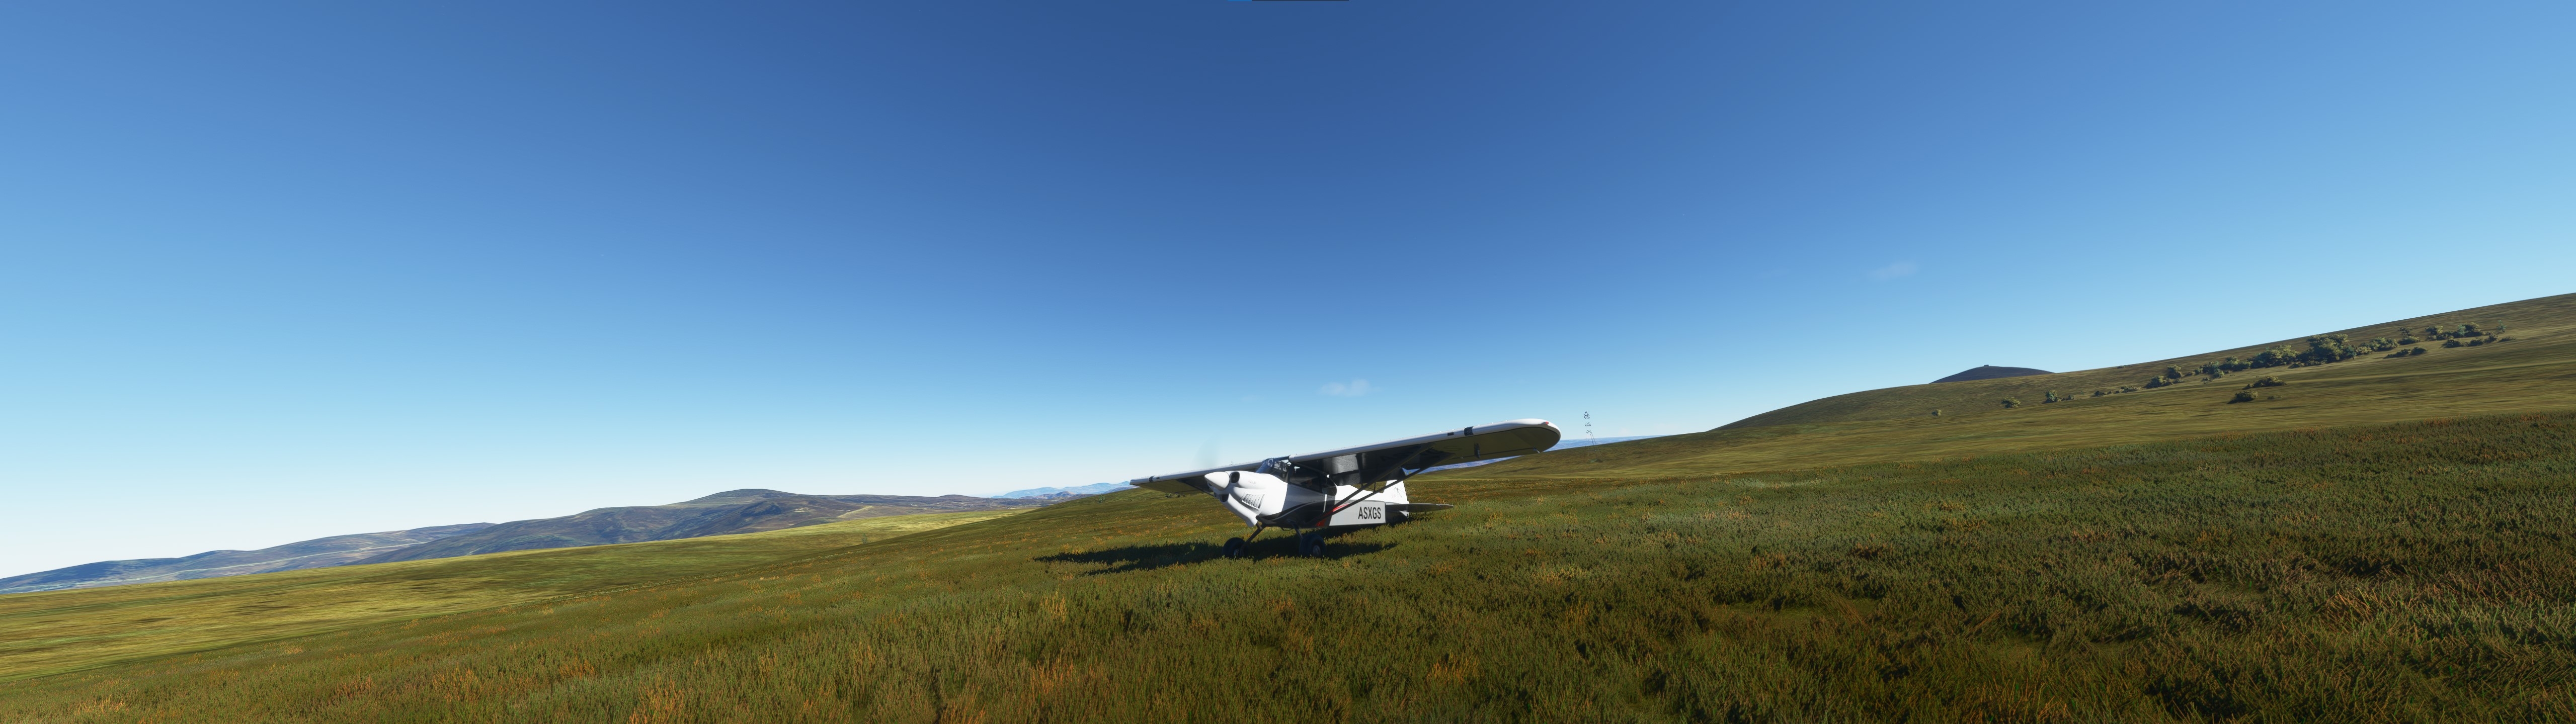 Фото бесплатно самолеты, поле, игровой ландшафт